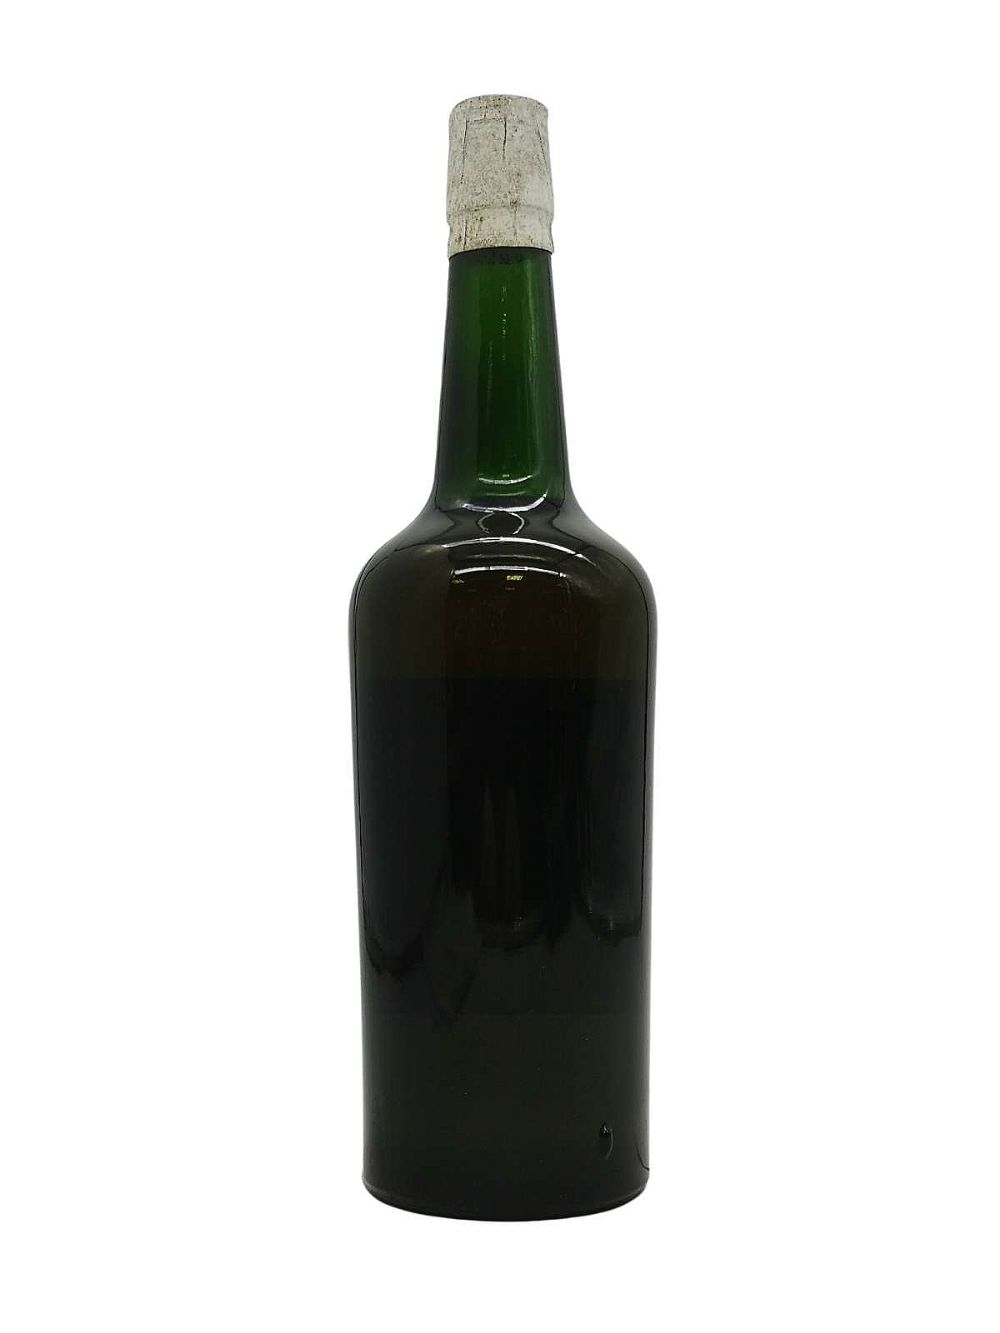 John Jameson & Son Ltd, 'JJ & S', Distilled 1931, bottled 1969